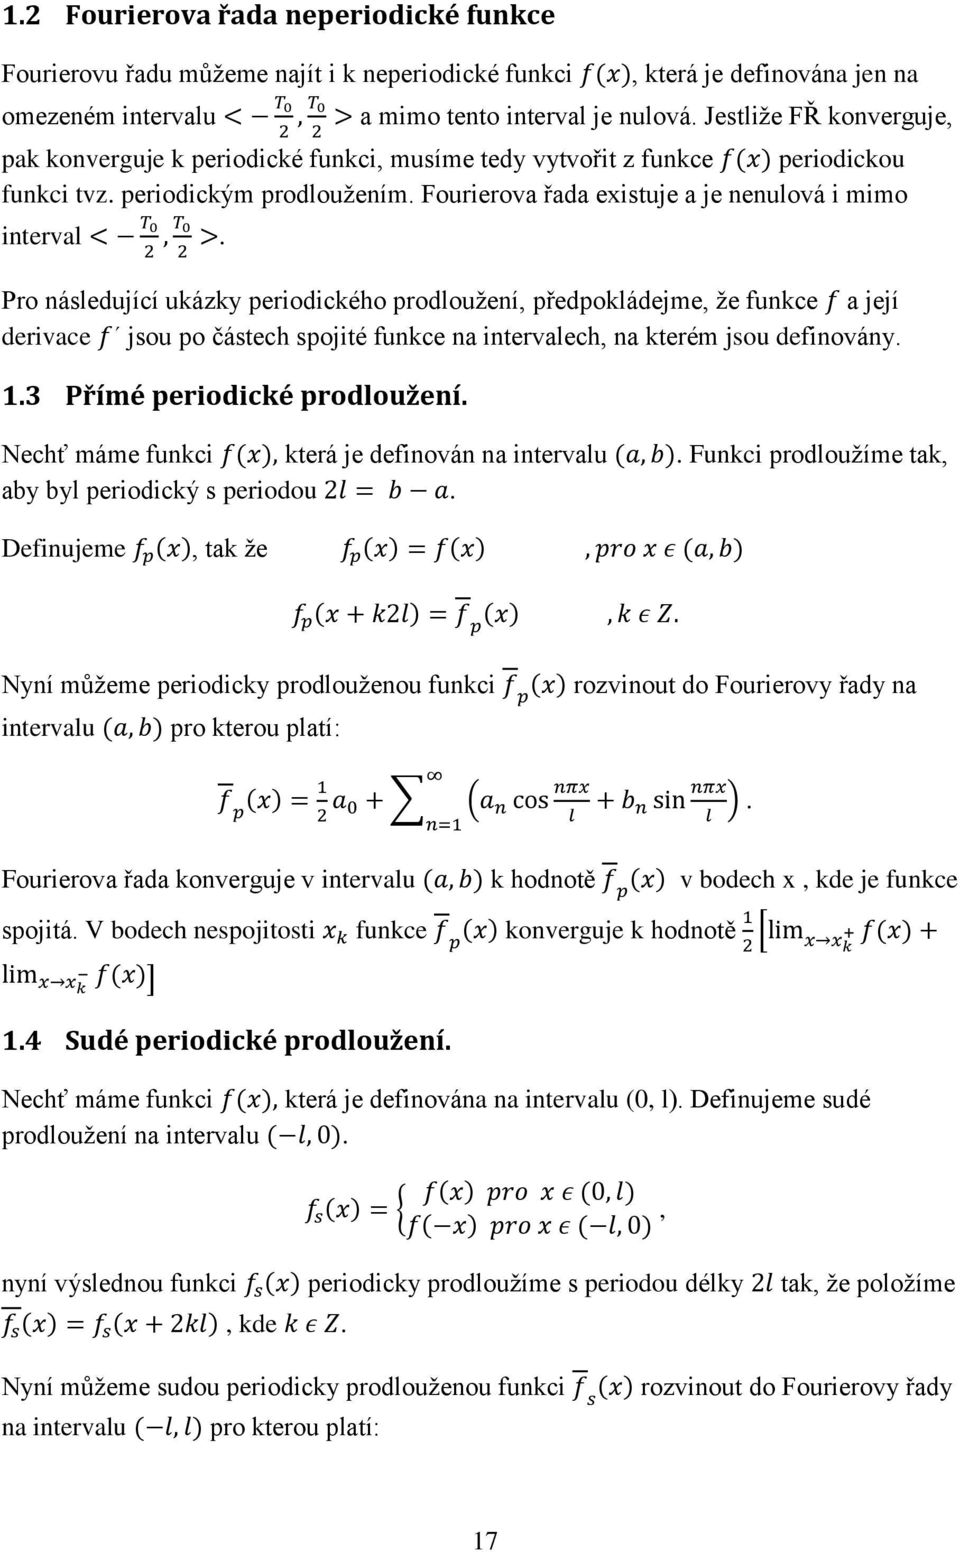 Pro následující ukázky periodického prodloužení, předpokládejme, že funkce a její derivace jsou po částech spojité funkce na intervalech, na kterém jsou definovány. 1.3 Přímé periodické prodloužení.